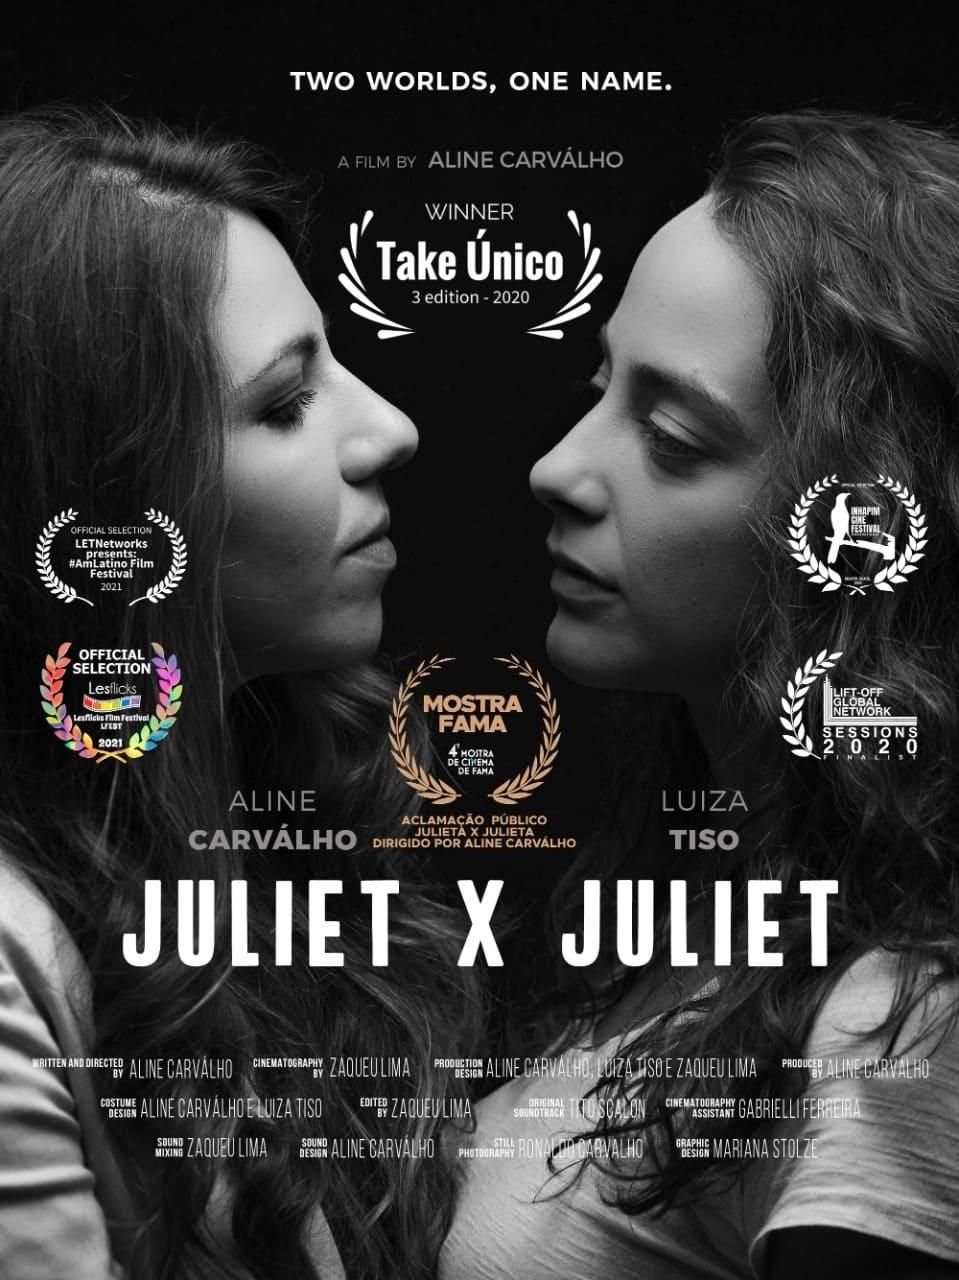 Juliet X Juliet poster